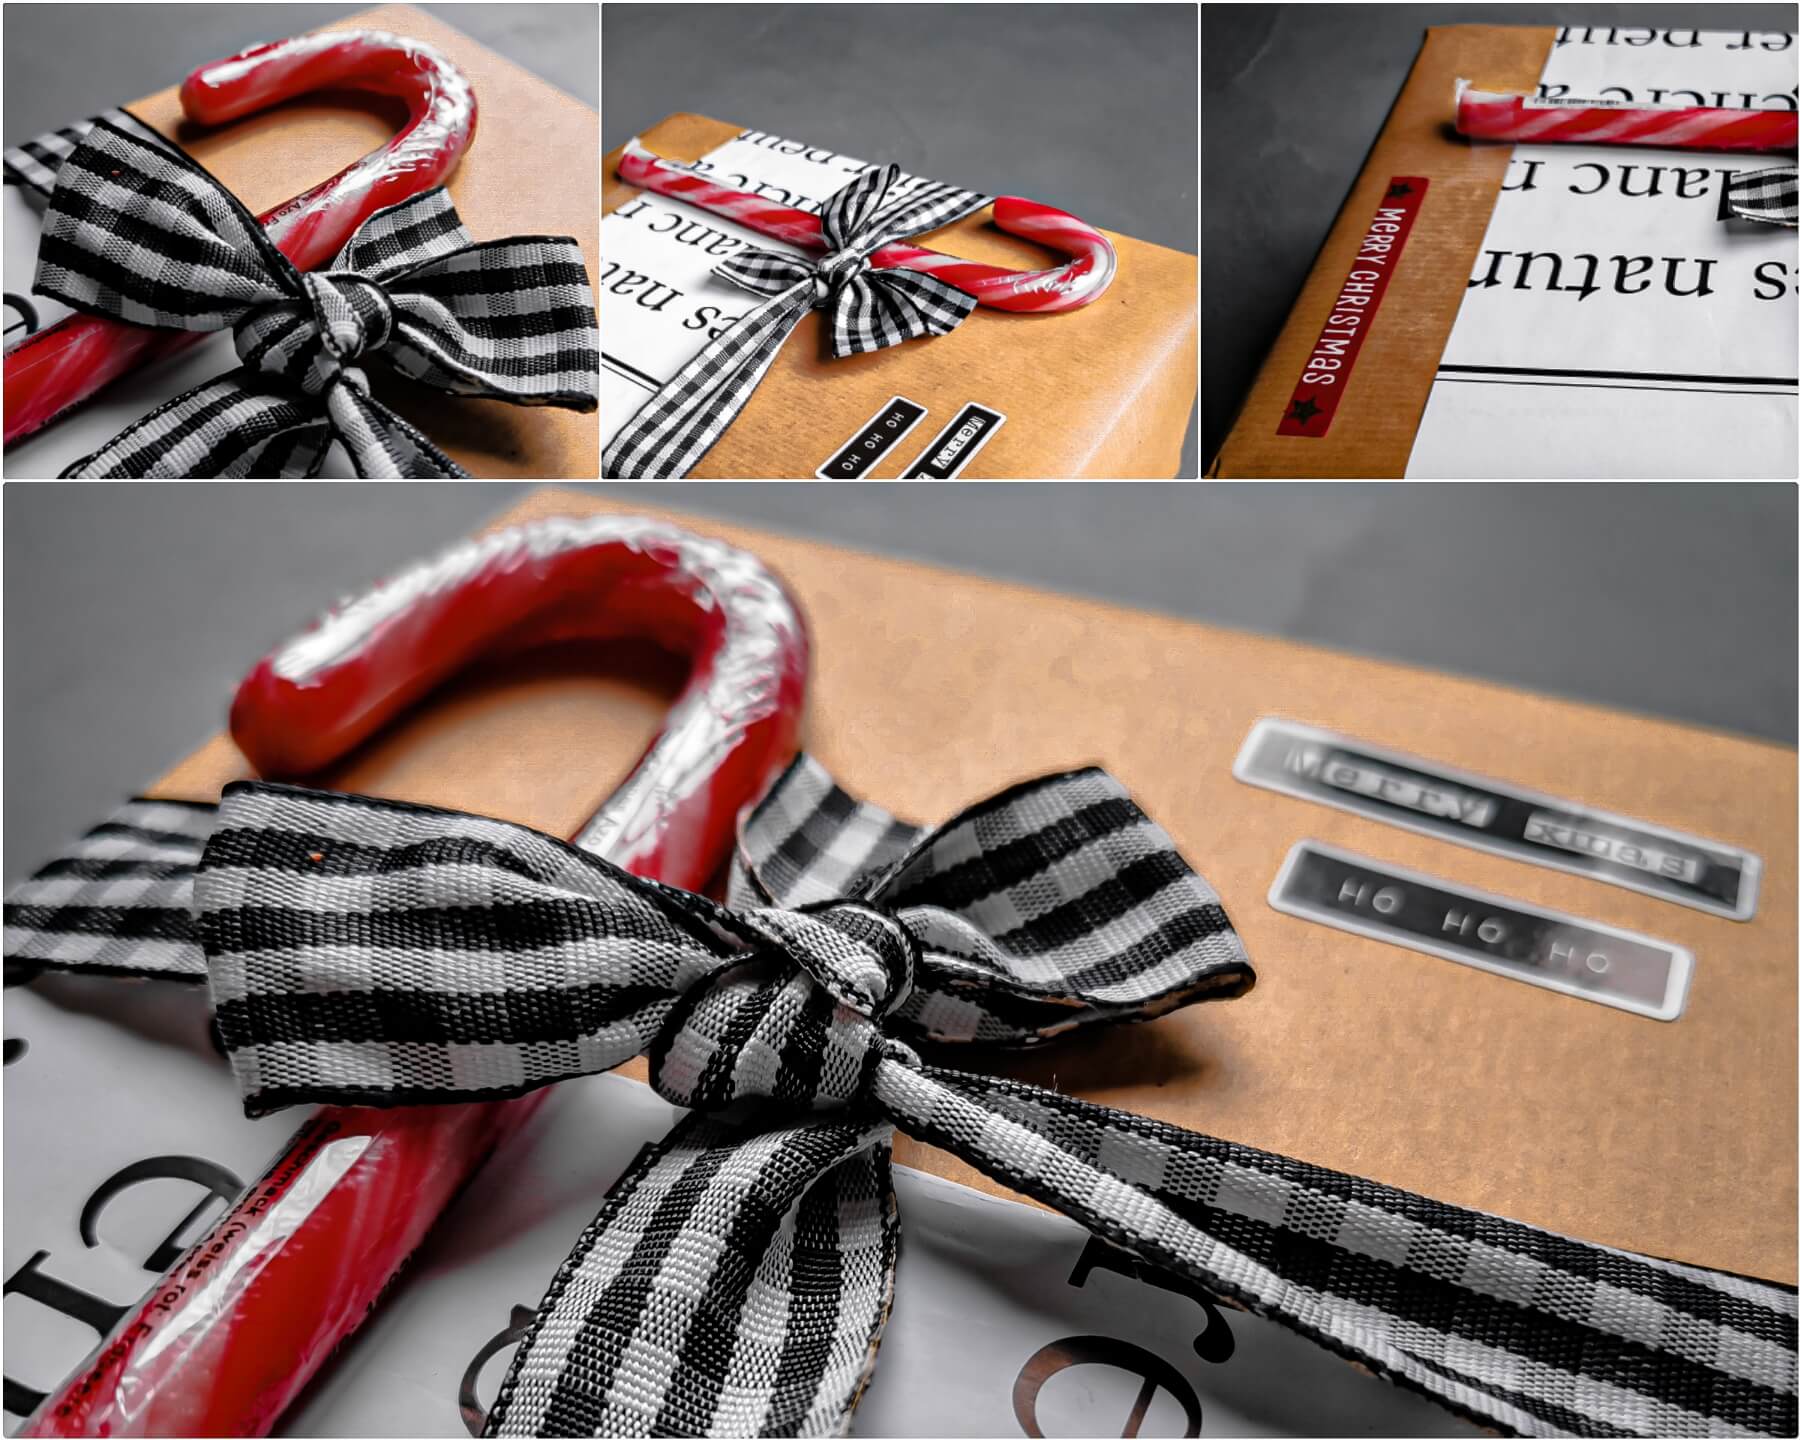 inCollage 20191215 035324668 resized 20191215 054324212 1 - 11 tipov ako zabaliť vianočné darčeky originálne a kreatívne